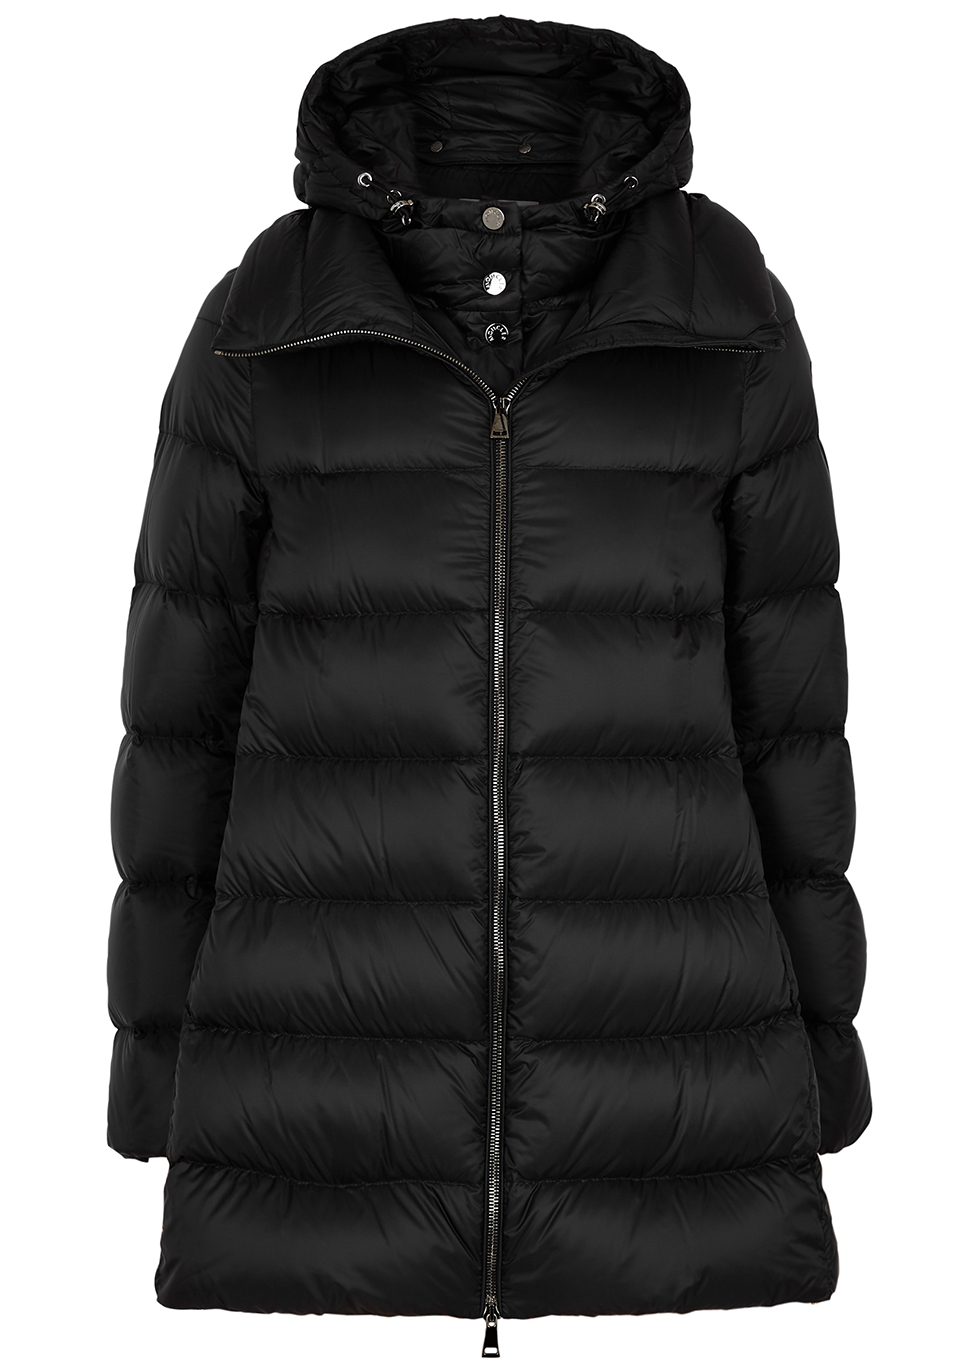 Moncler Ange black quilted jacket 